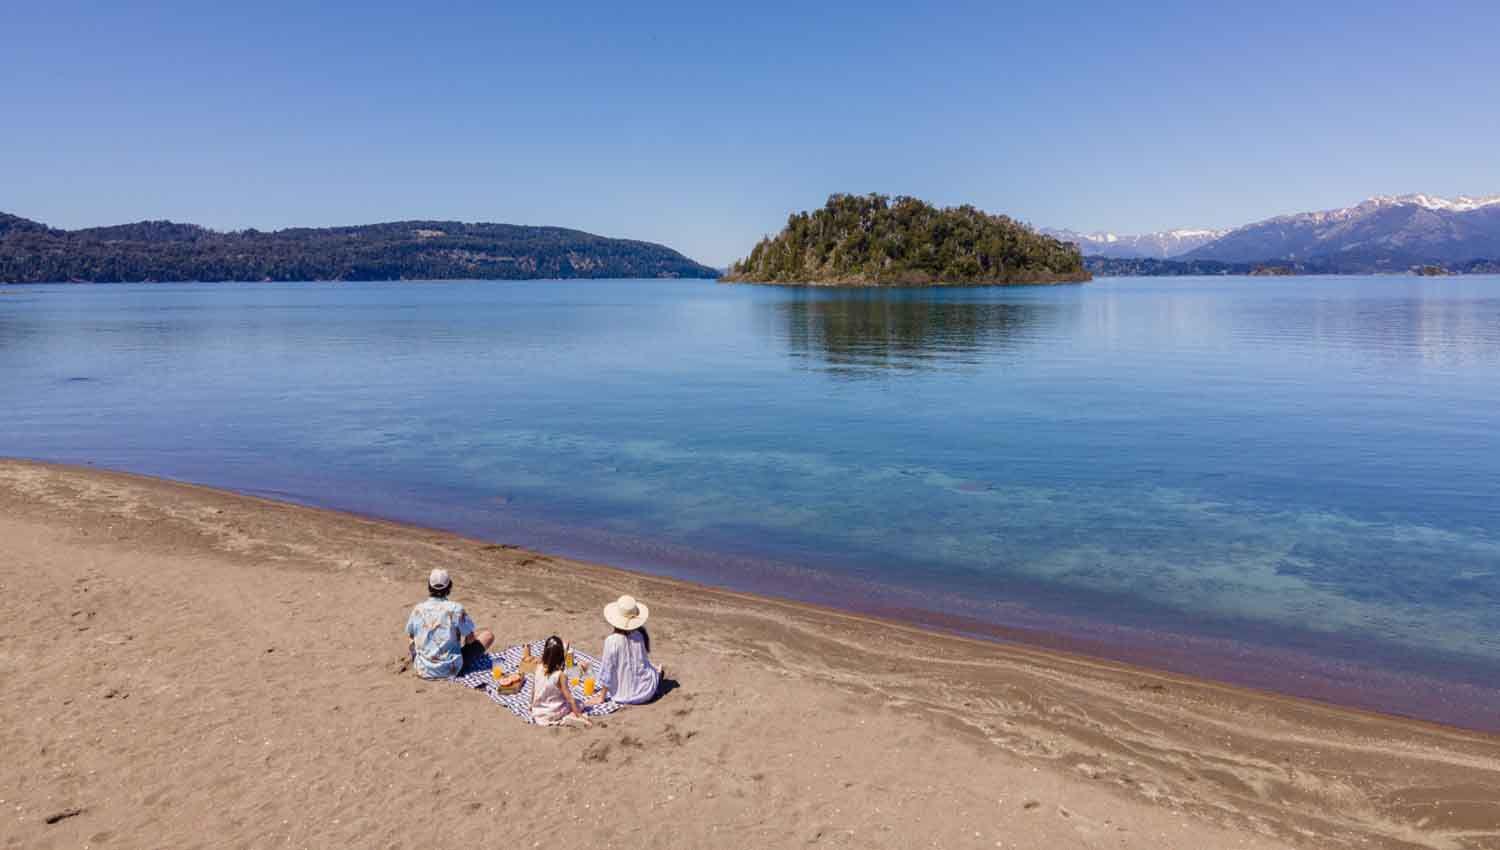 El increiacuteble circuito de playas secretas y lagos escondidos en Bariloche